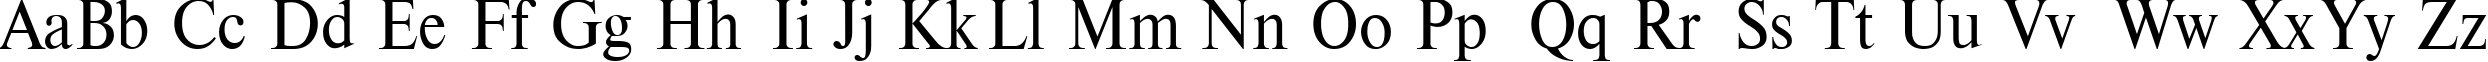 Пример написания английского алфавита шрифтом TimesET 90